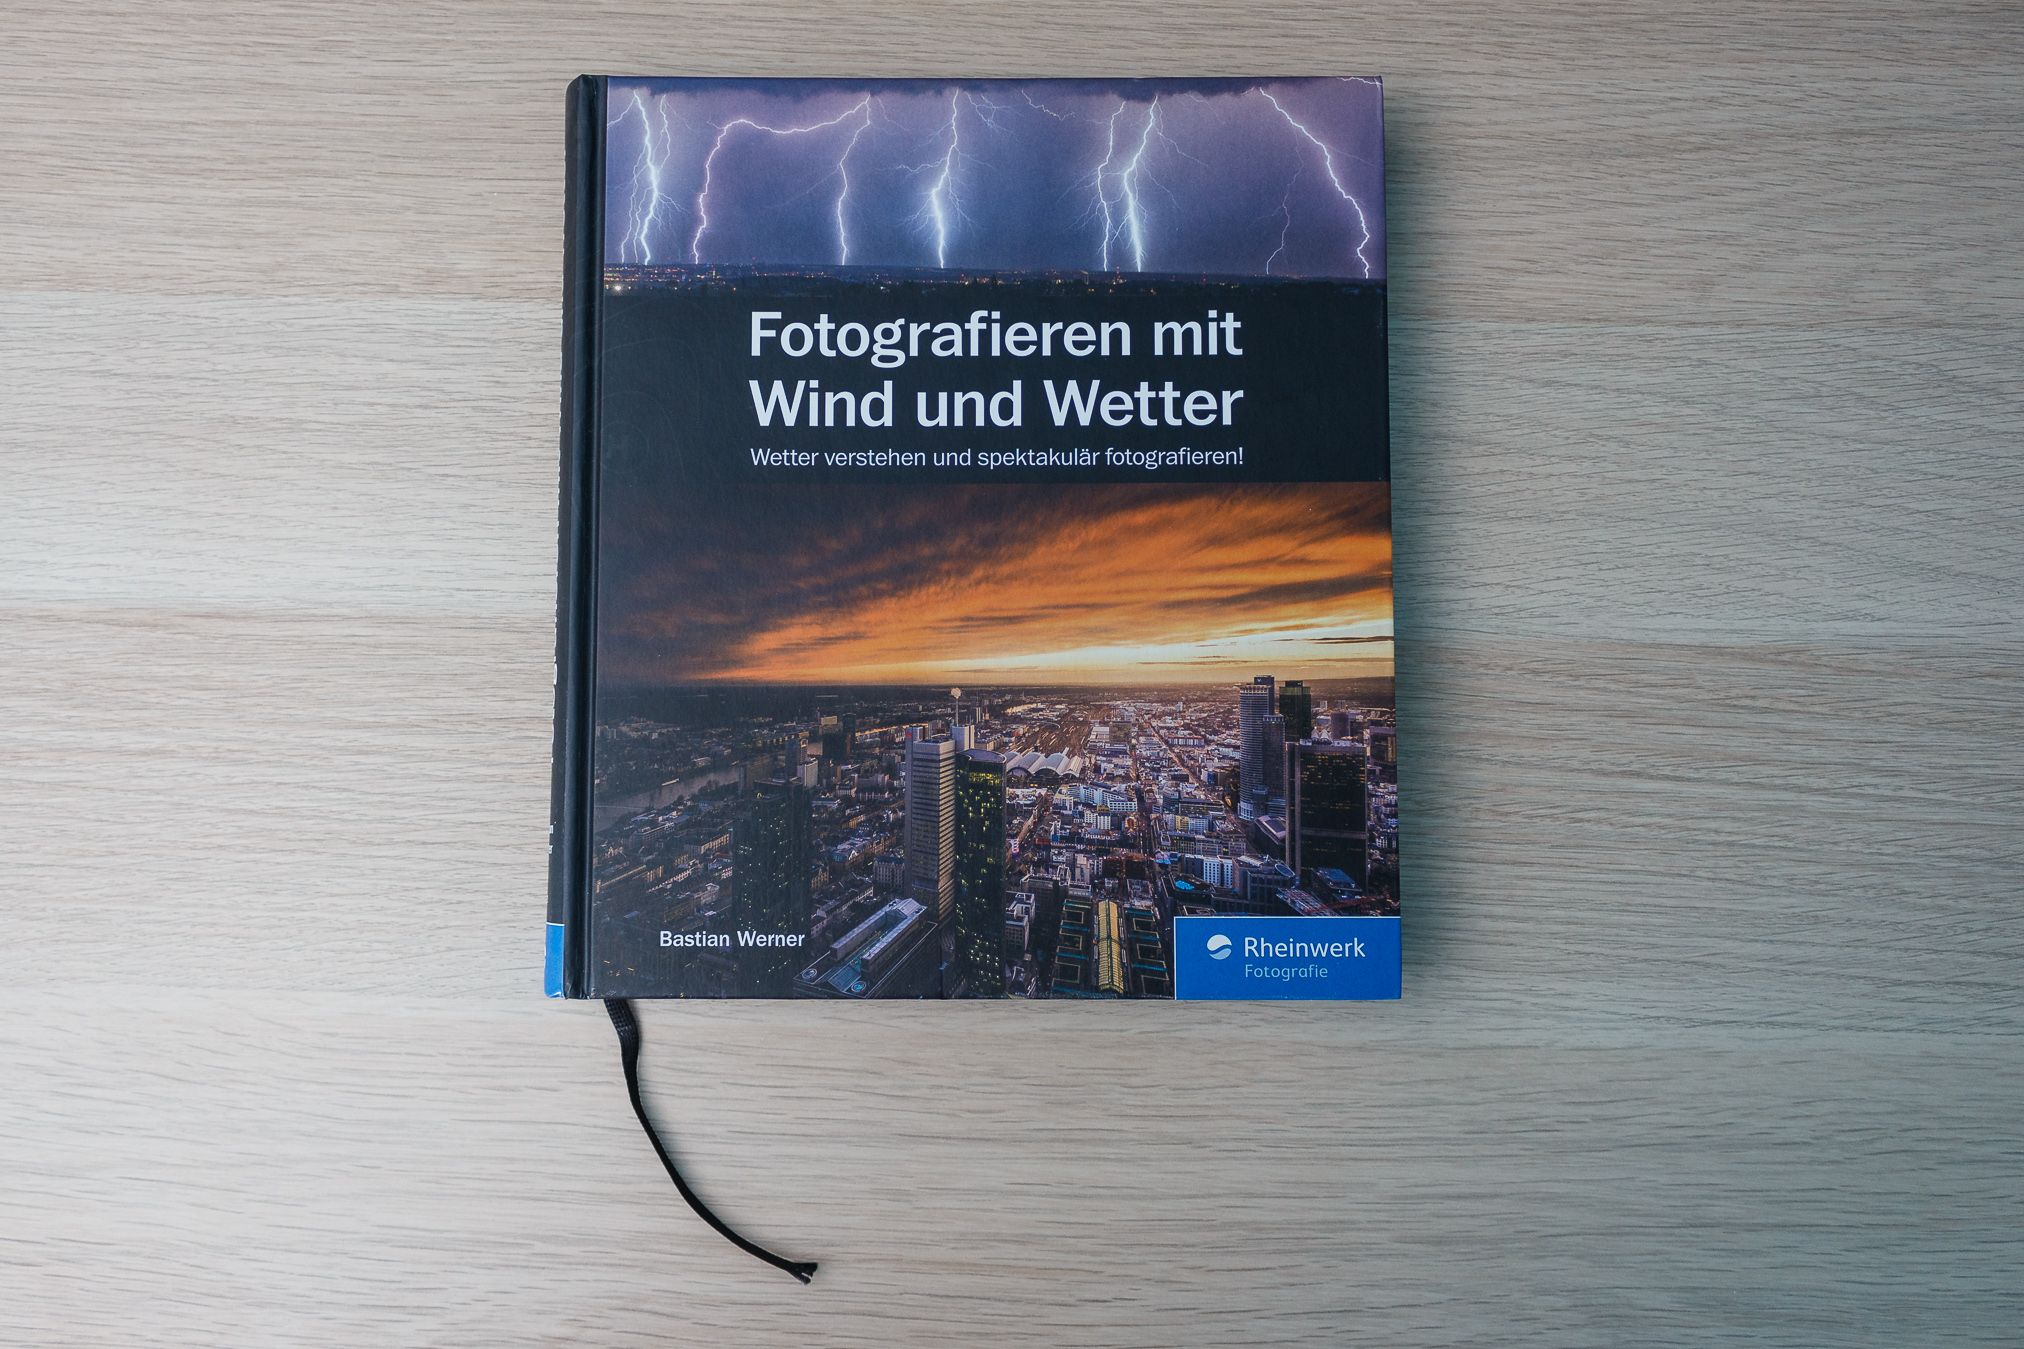 Das Cover des Buches "Fotografieren mit Wind und Wetter"